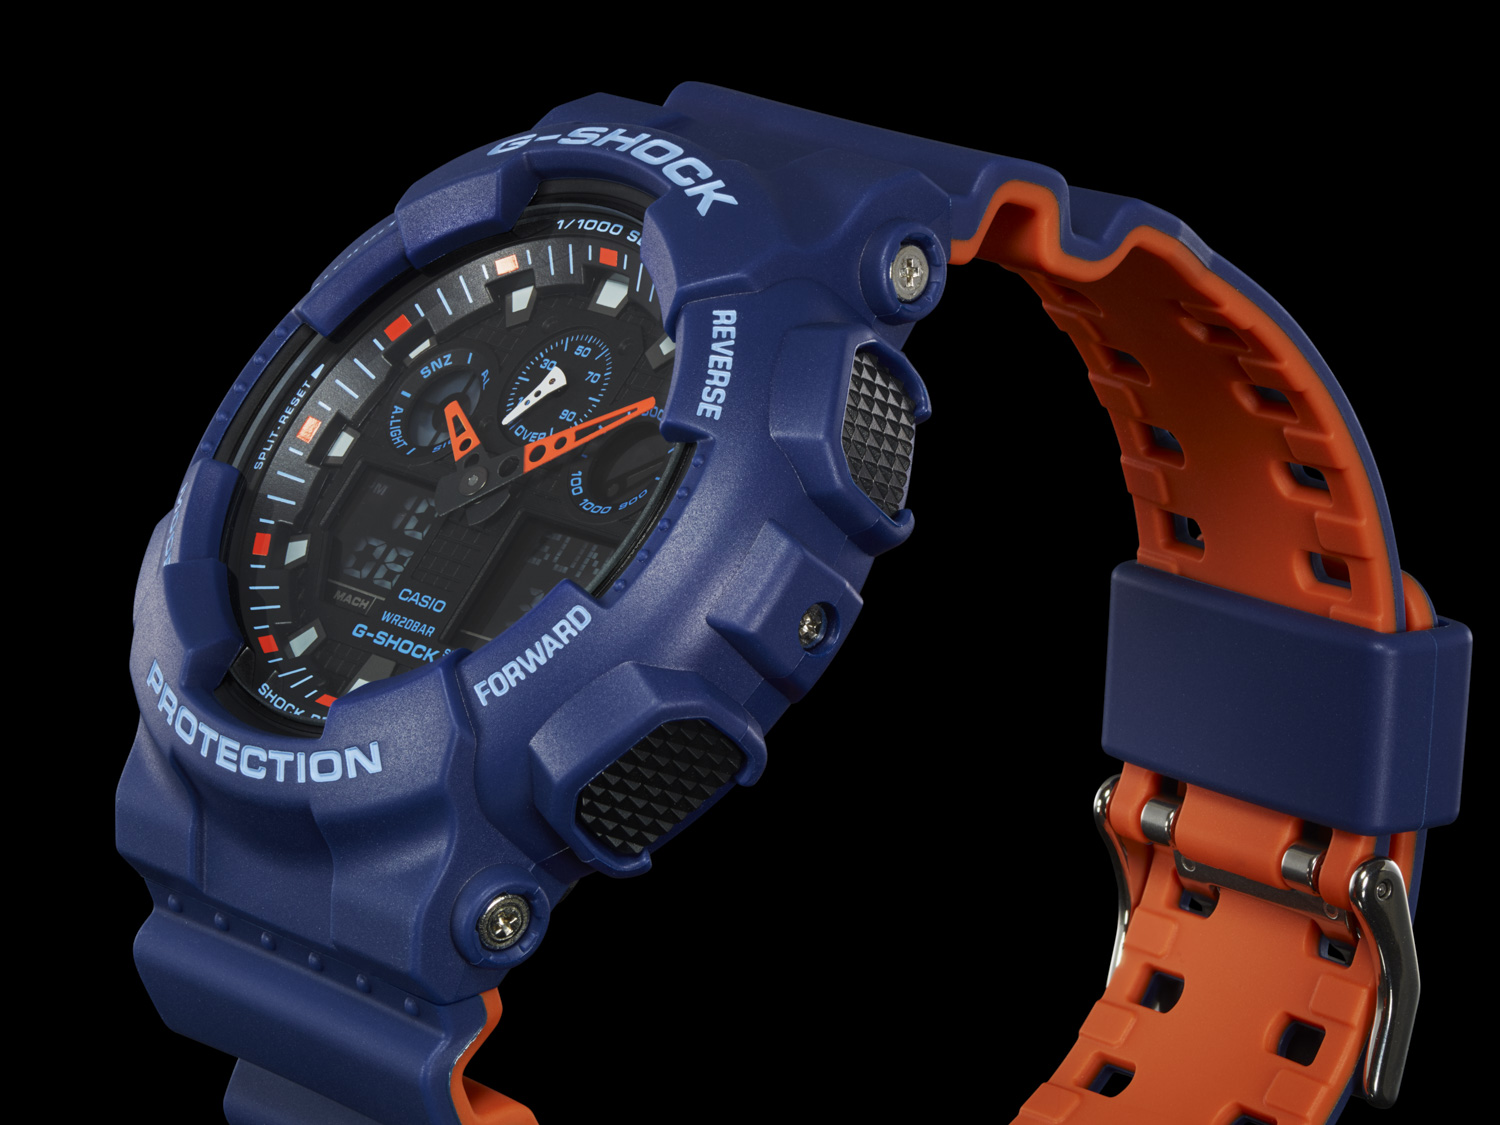 Zegarek G-SHOCK GA-100 pokazany lewym bokiem w kolorze niebiesko pomarańczowym